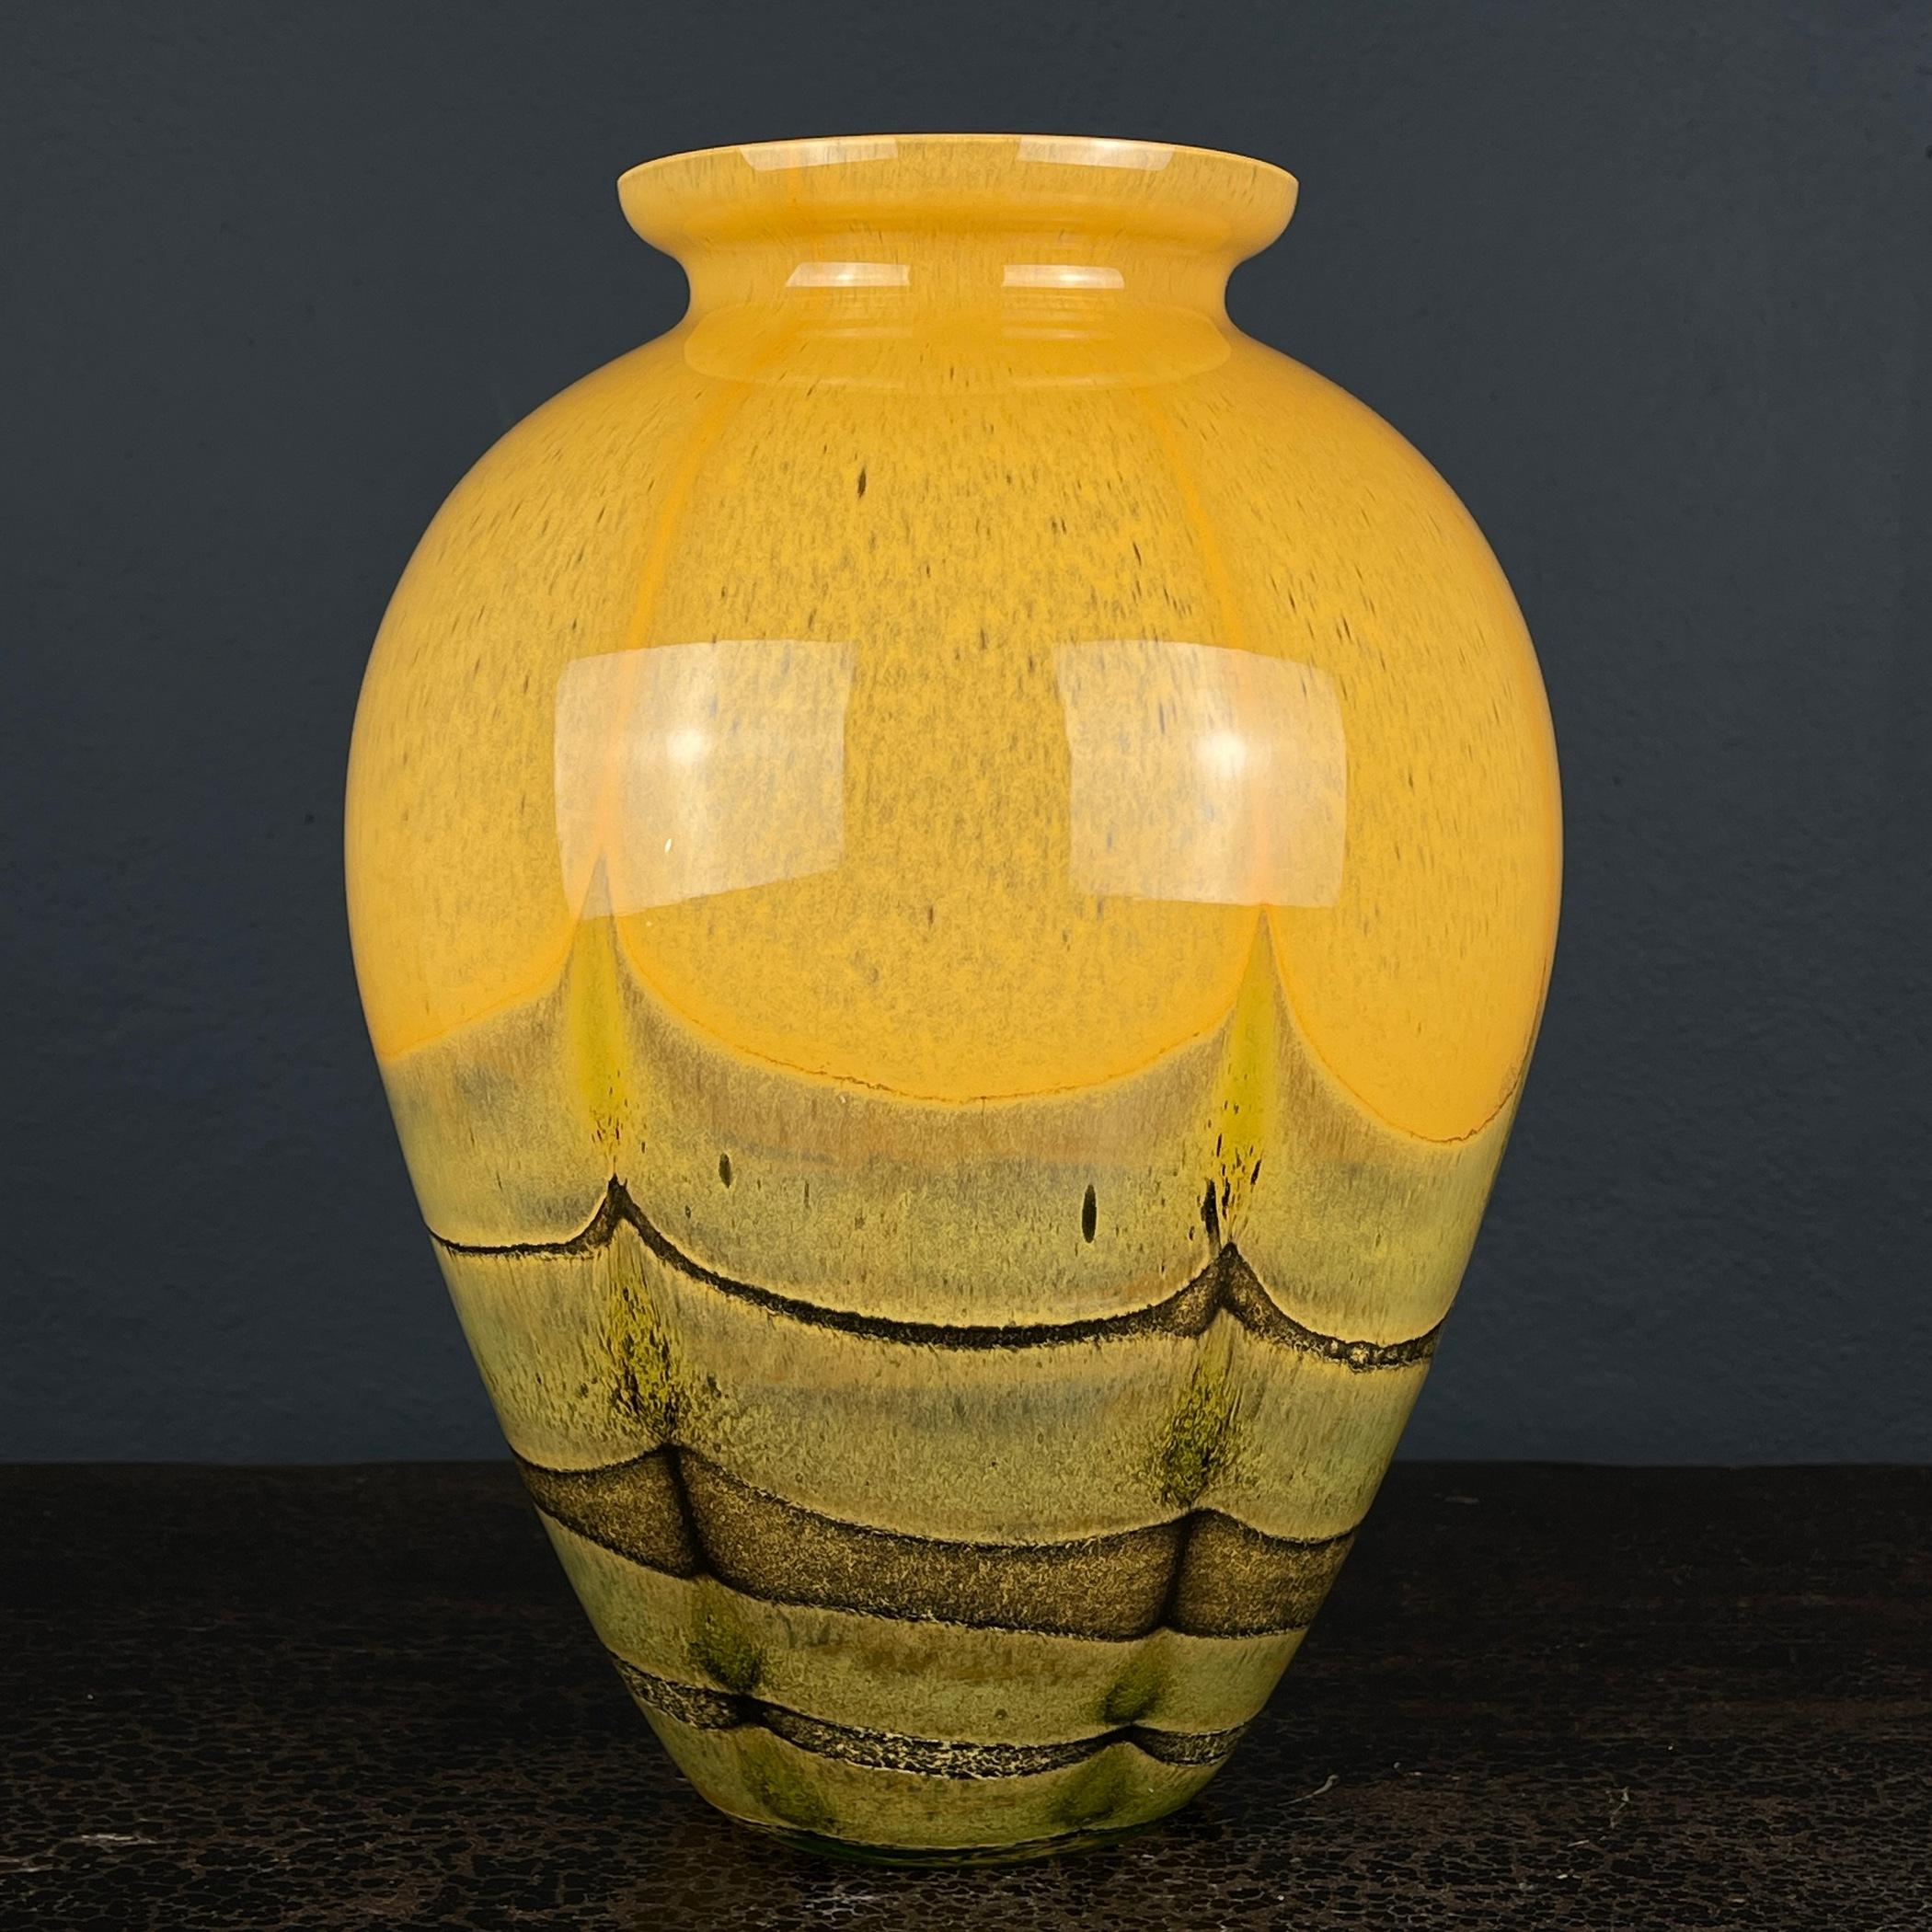 Admirez ce superbe vase en verre d'art de Murano, un chef-d'œuvre méticuleusement fabriqué en Italie dans les années 1970, une période très à la mode. Ce vase a gracieusement résisté à l'épreuve du temps et reste dans un état vintage remarquable.